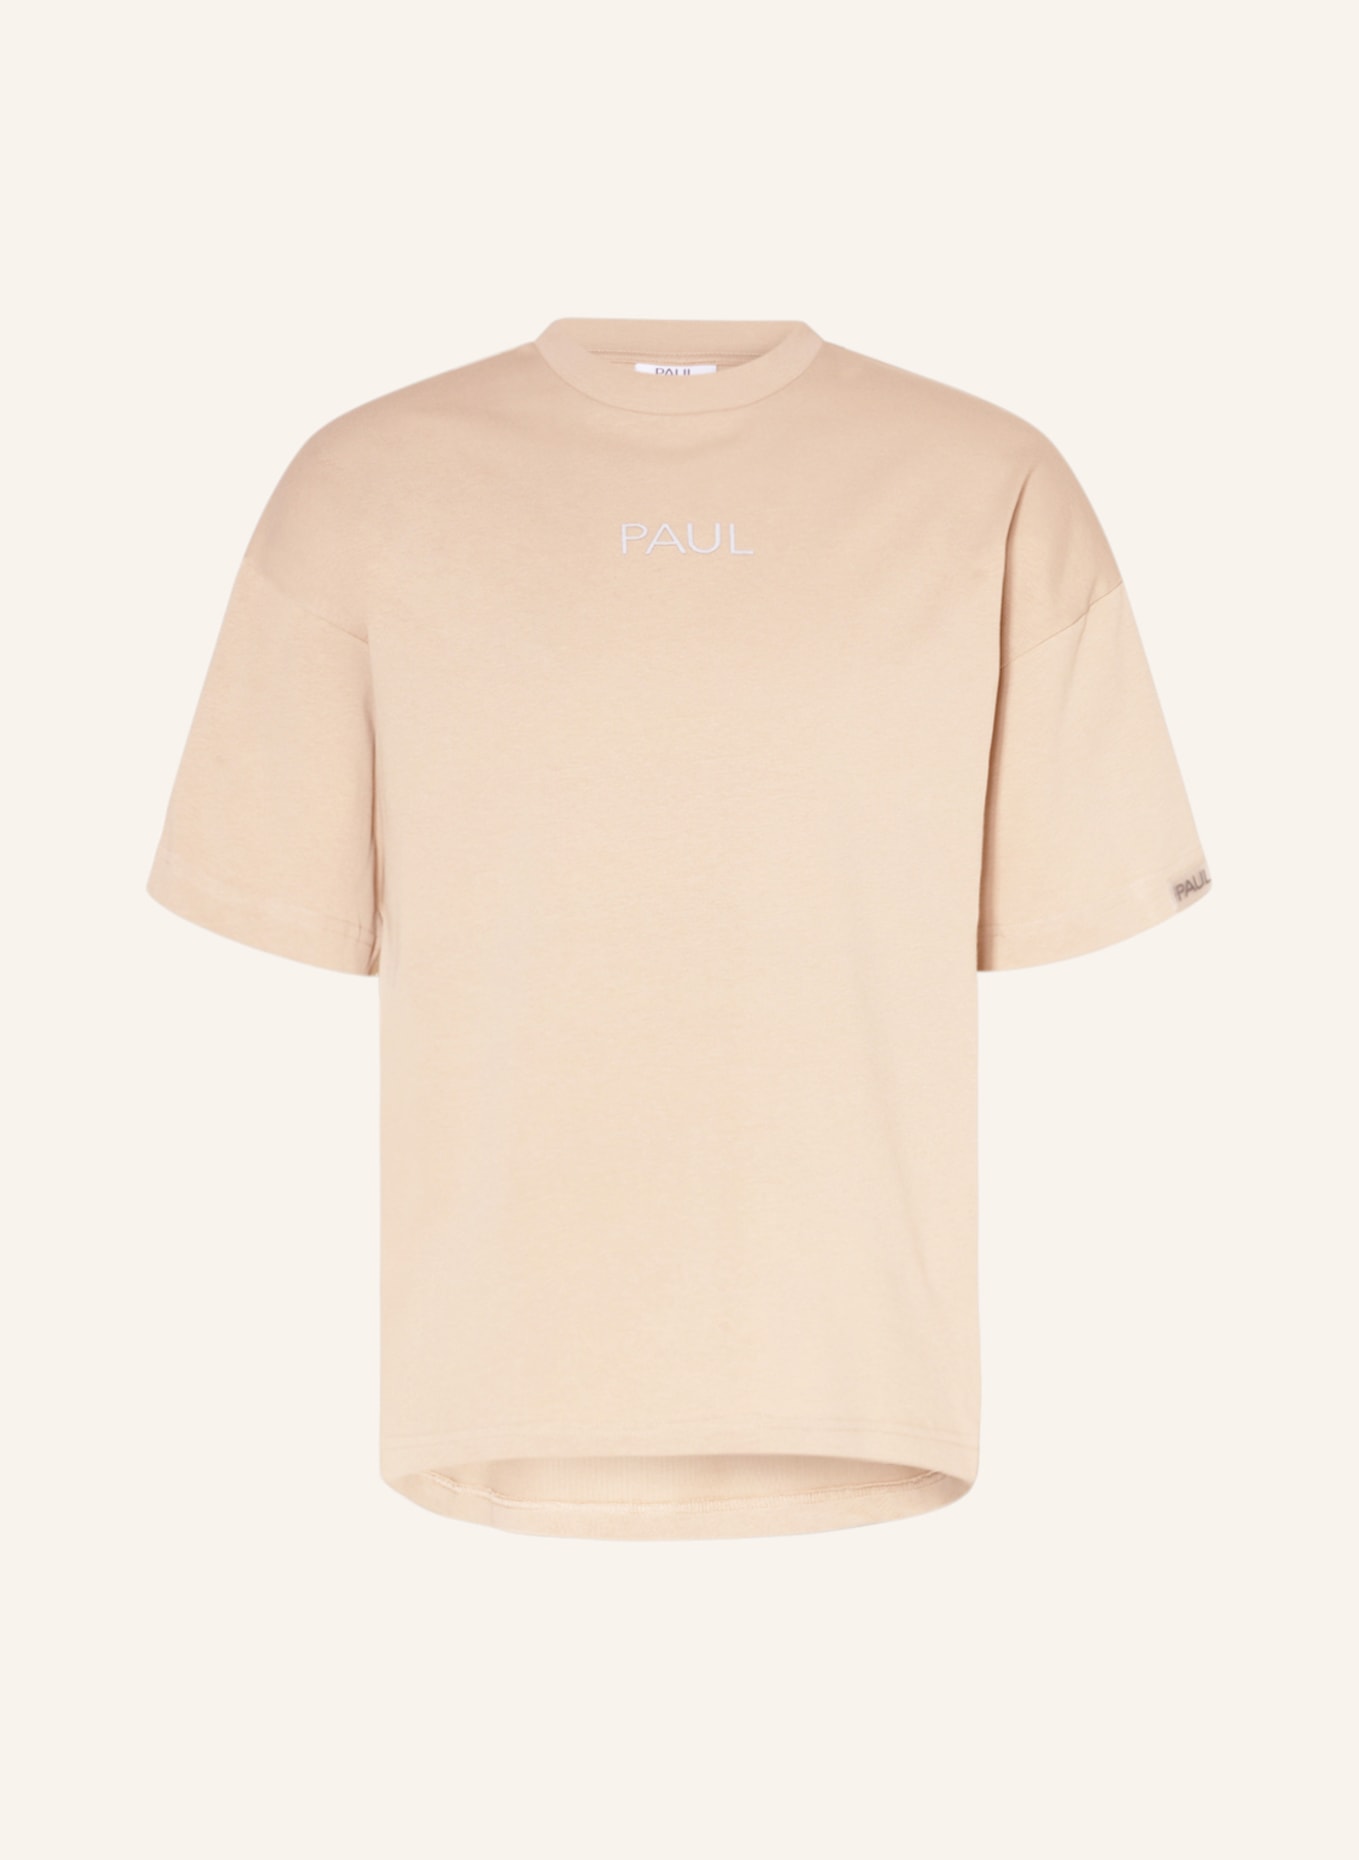 PAUL T-Shirt, Farbe: BEIGE (Bild 1)